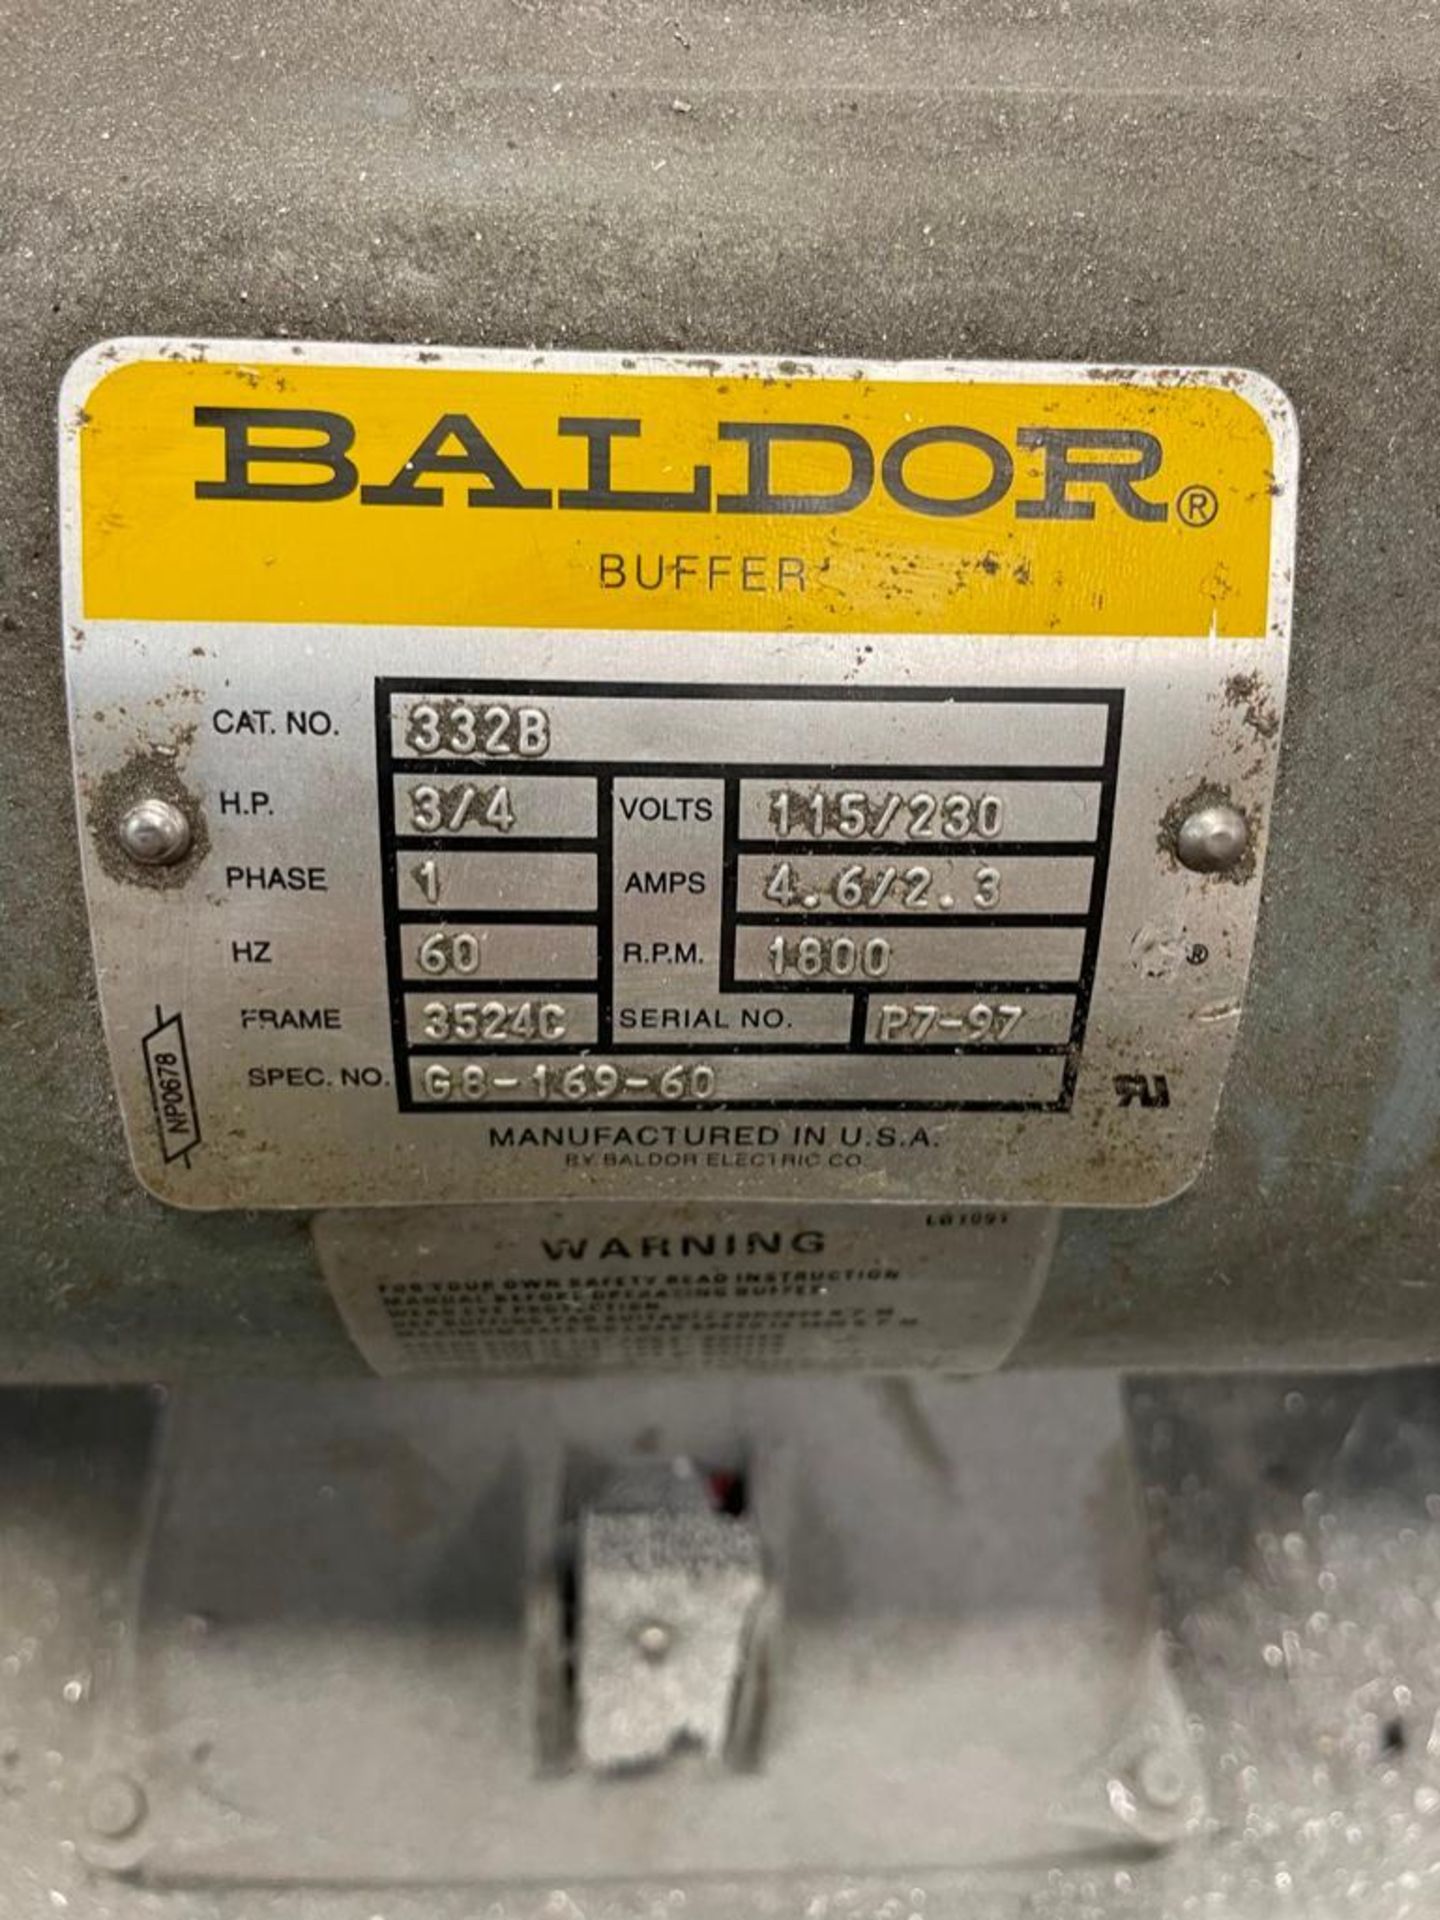 Baldor 3/4HP Double End Grinder - Image 4 of 4